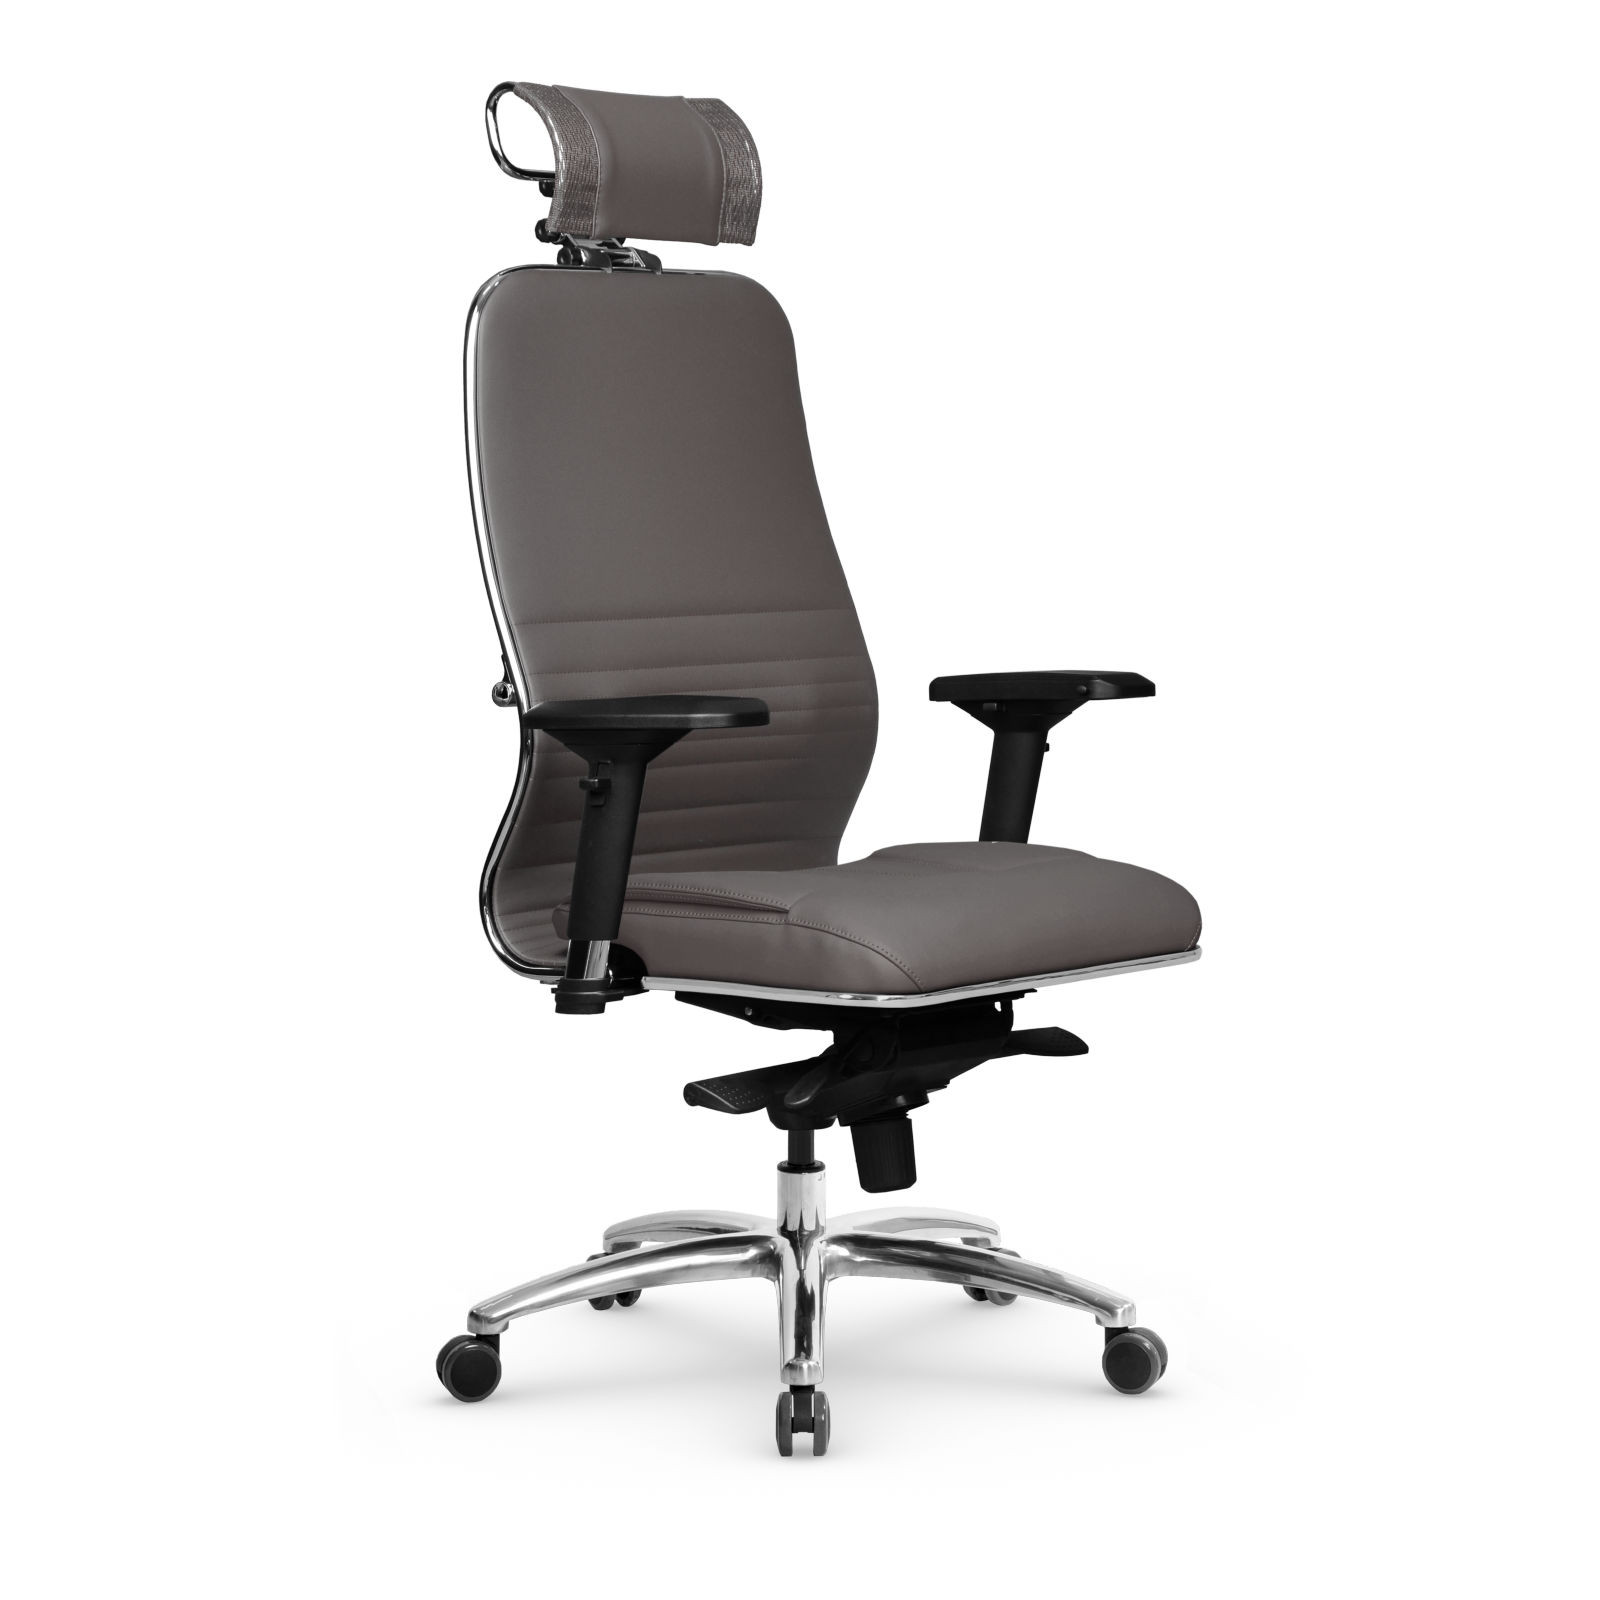 Кресло Samurai KL-3.04 MPES, кресло Метта с механизмом качания, кресло компьютерное, кресло офисное, кресло самурай, кресло для дома и офиса (Серый)